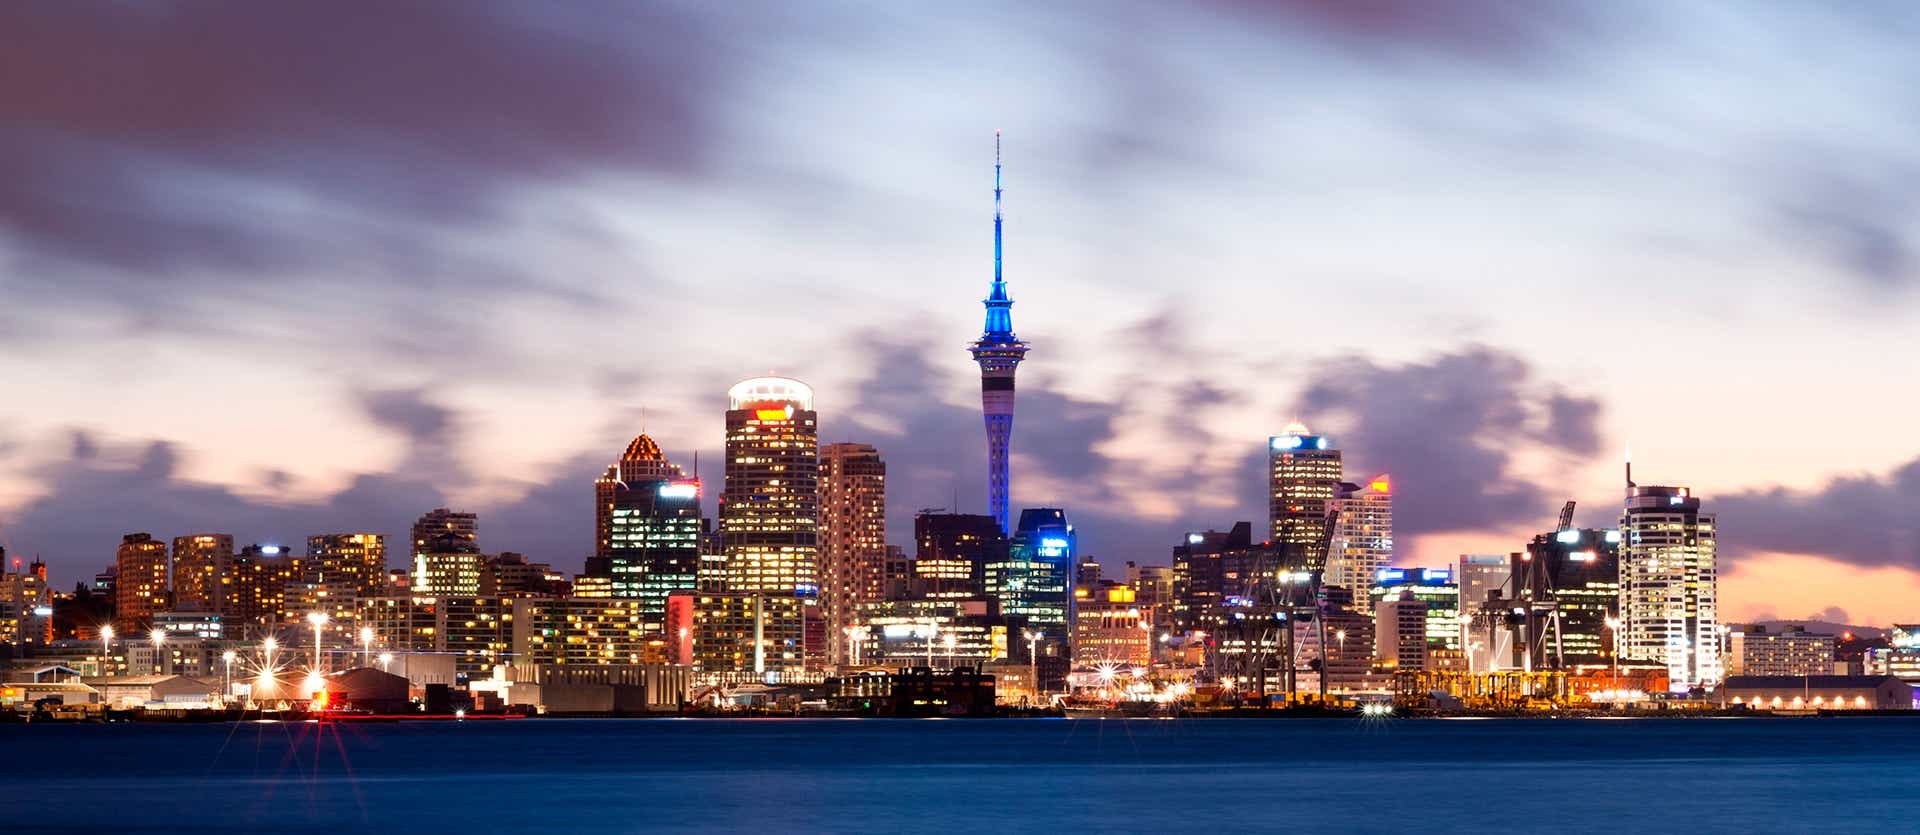 <span class="iconos separador"></span> Auckland Skyline <span class="iconos separador"></span>